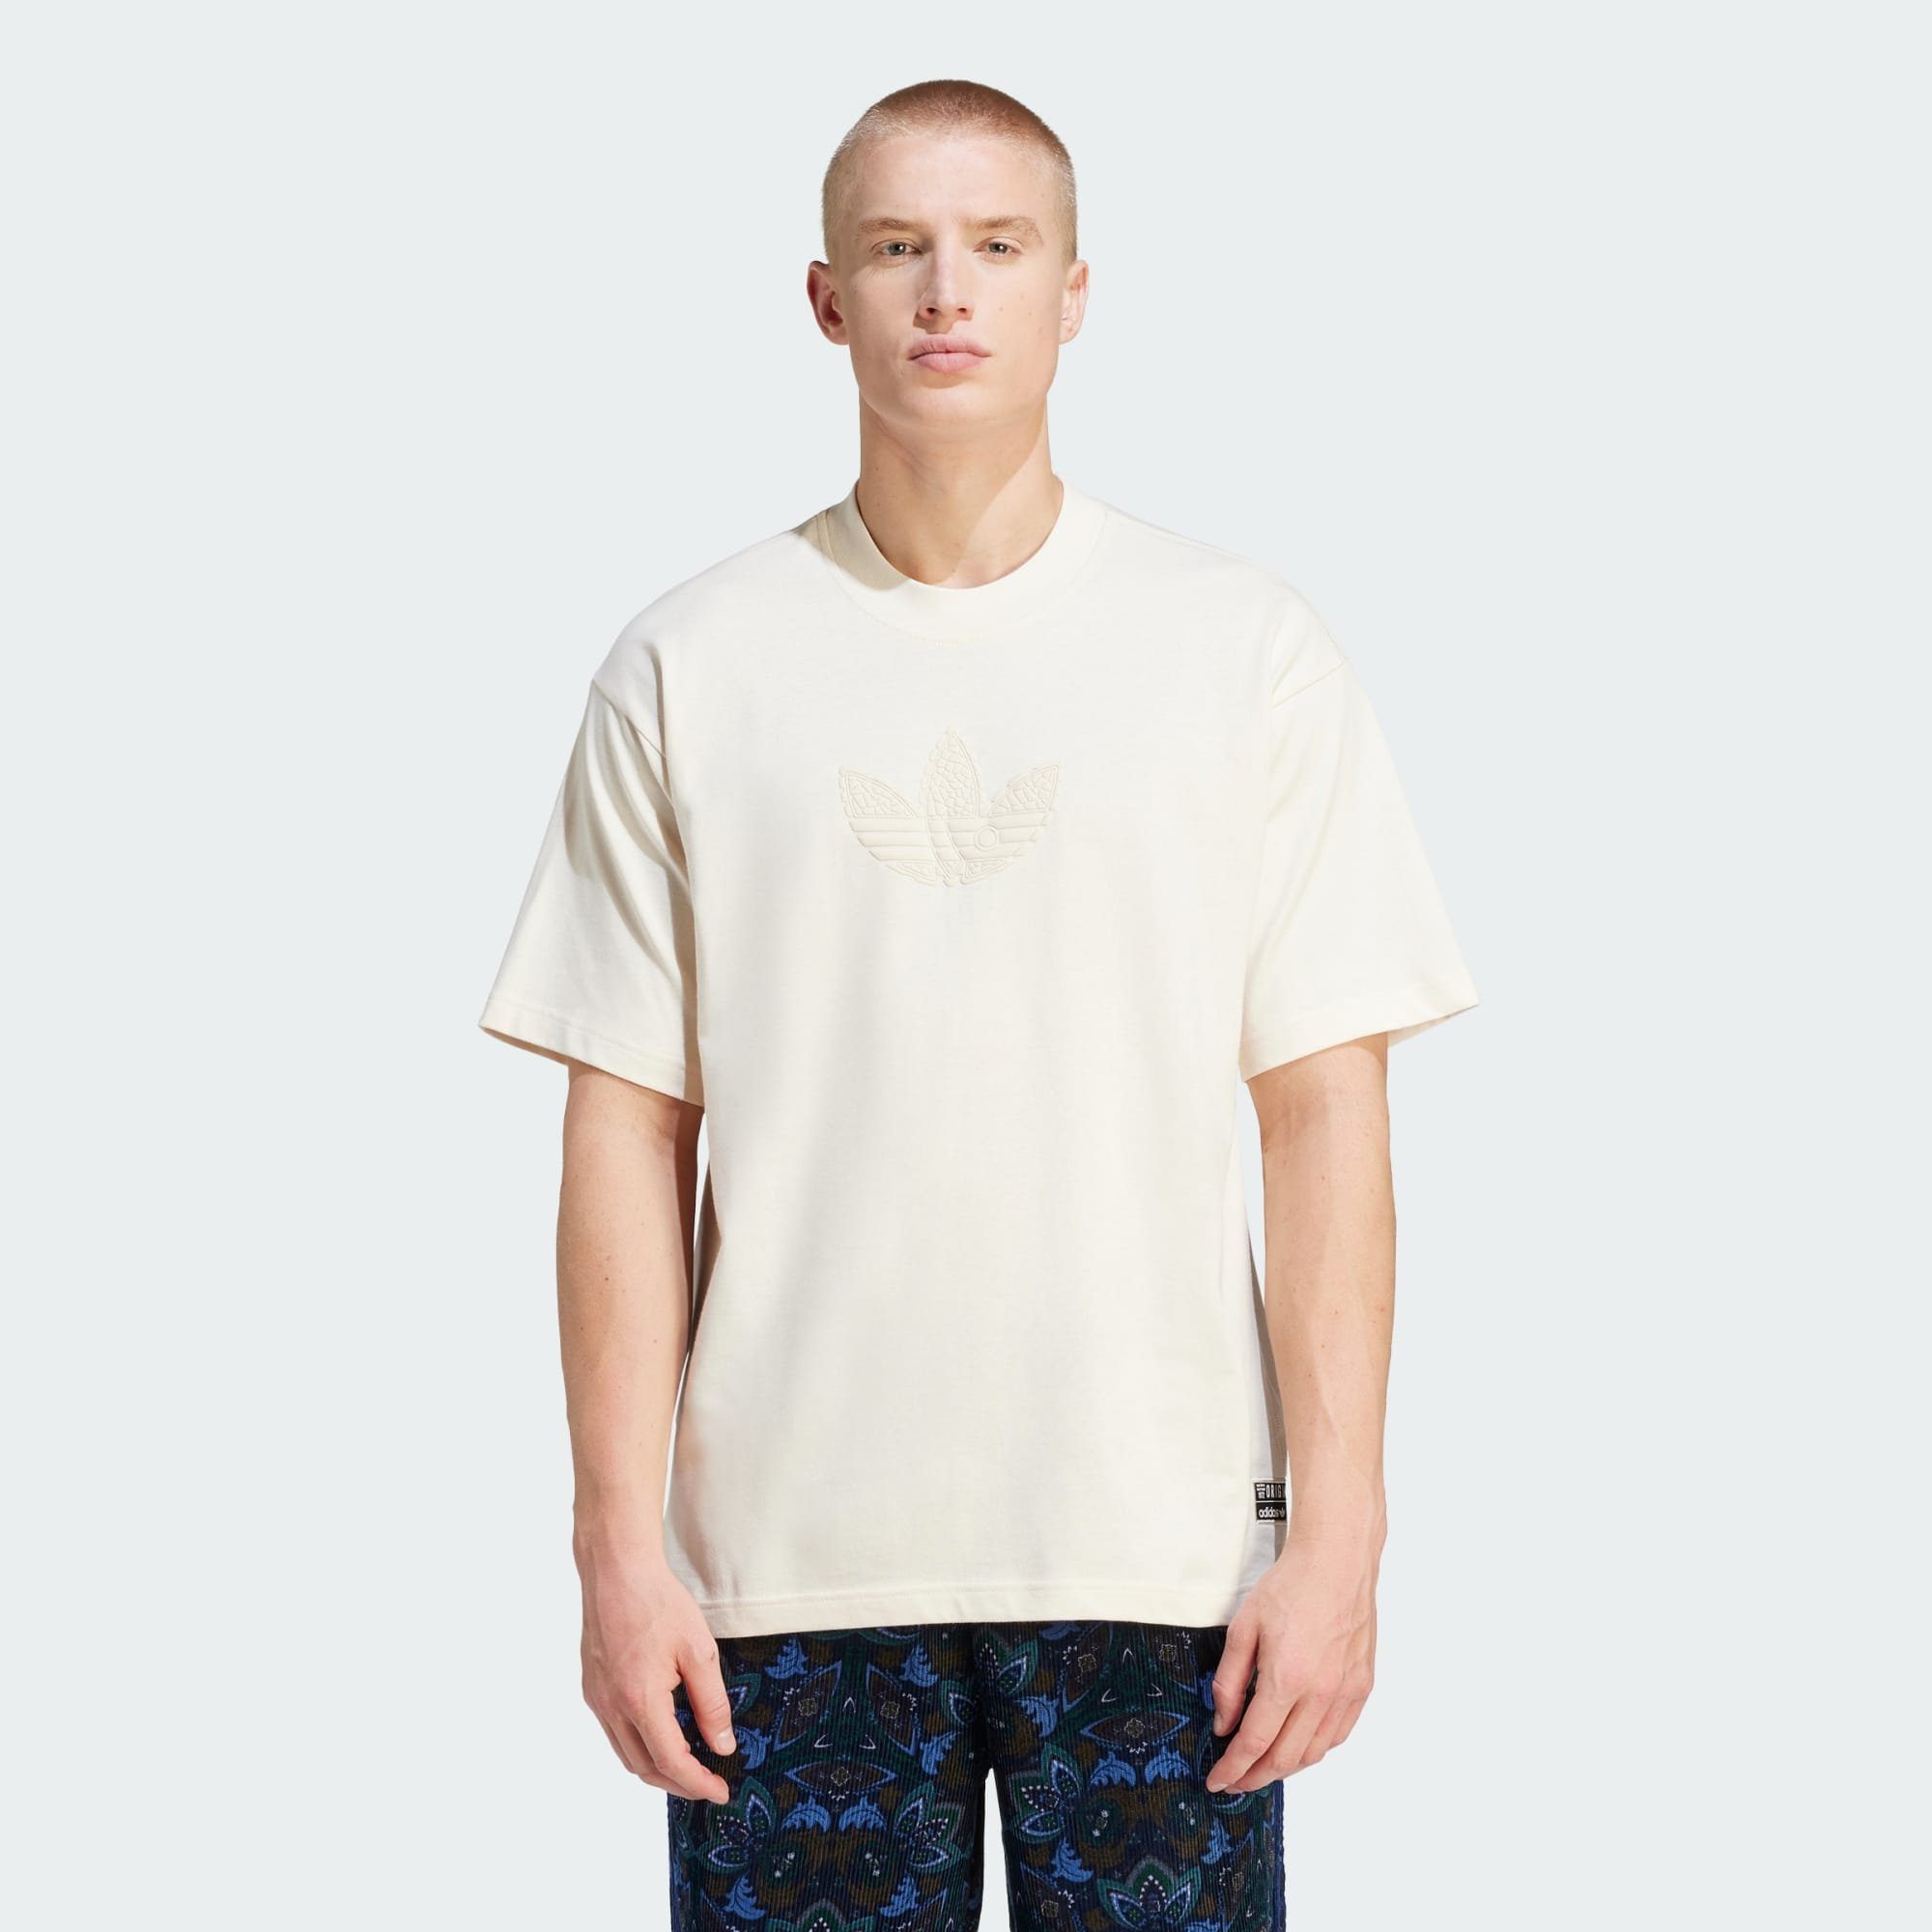 Wonder PREMIUM T-Shirt adidas T-SHIRT GRAPHIC Originals White